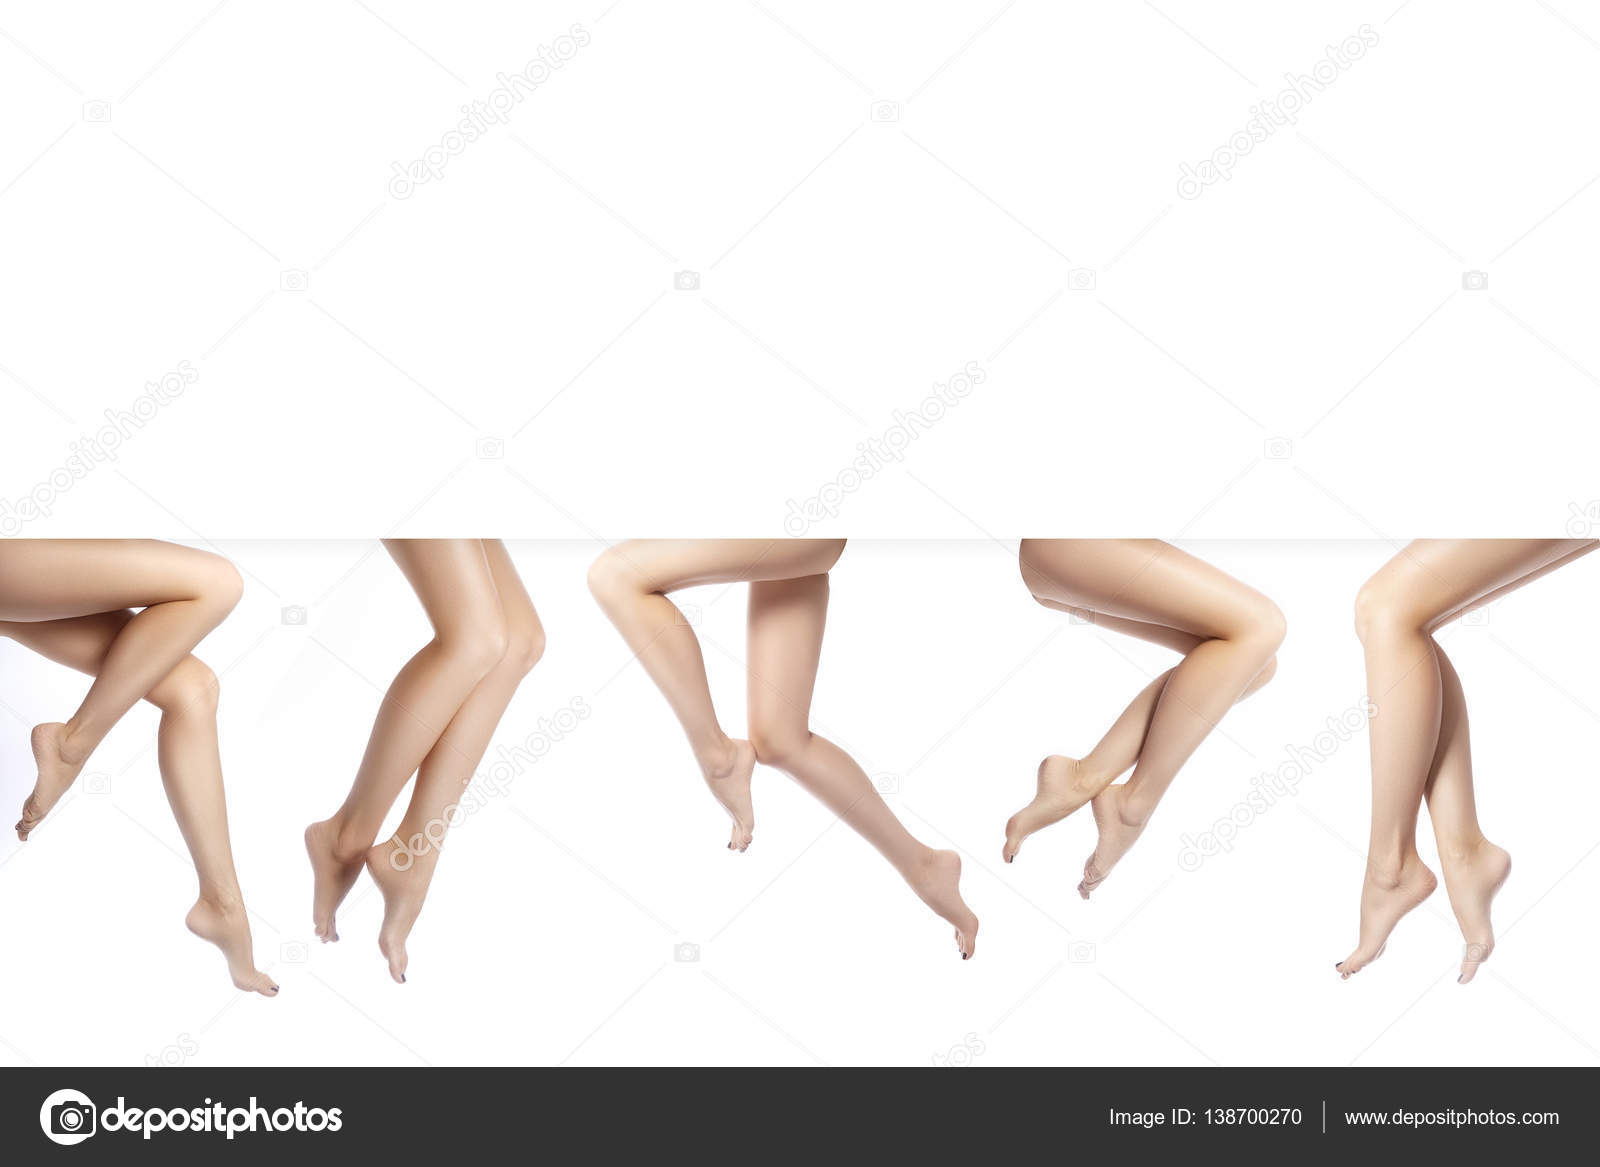 Szép női láb Stock fotók, Szép női láb Jogdíjmentes képek | Depositphotos